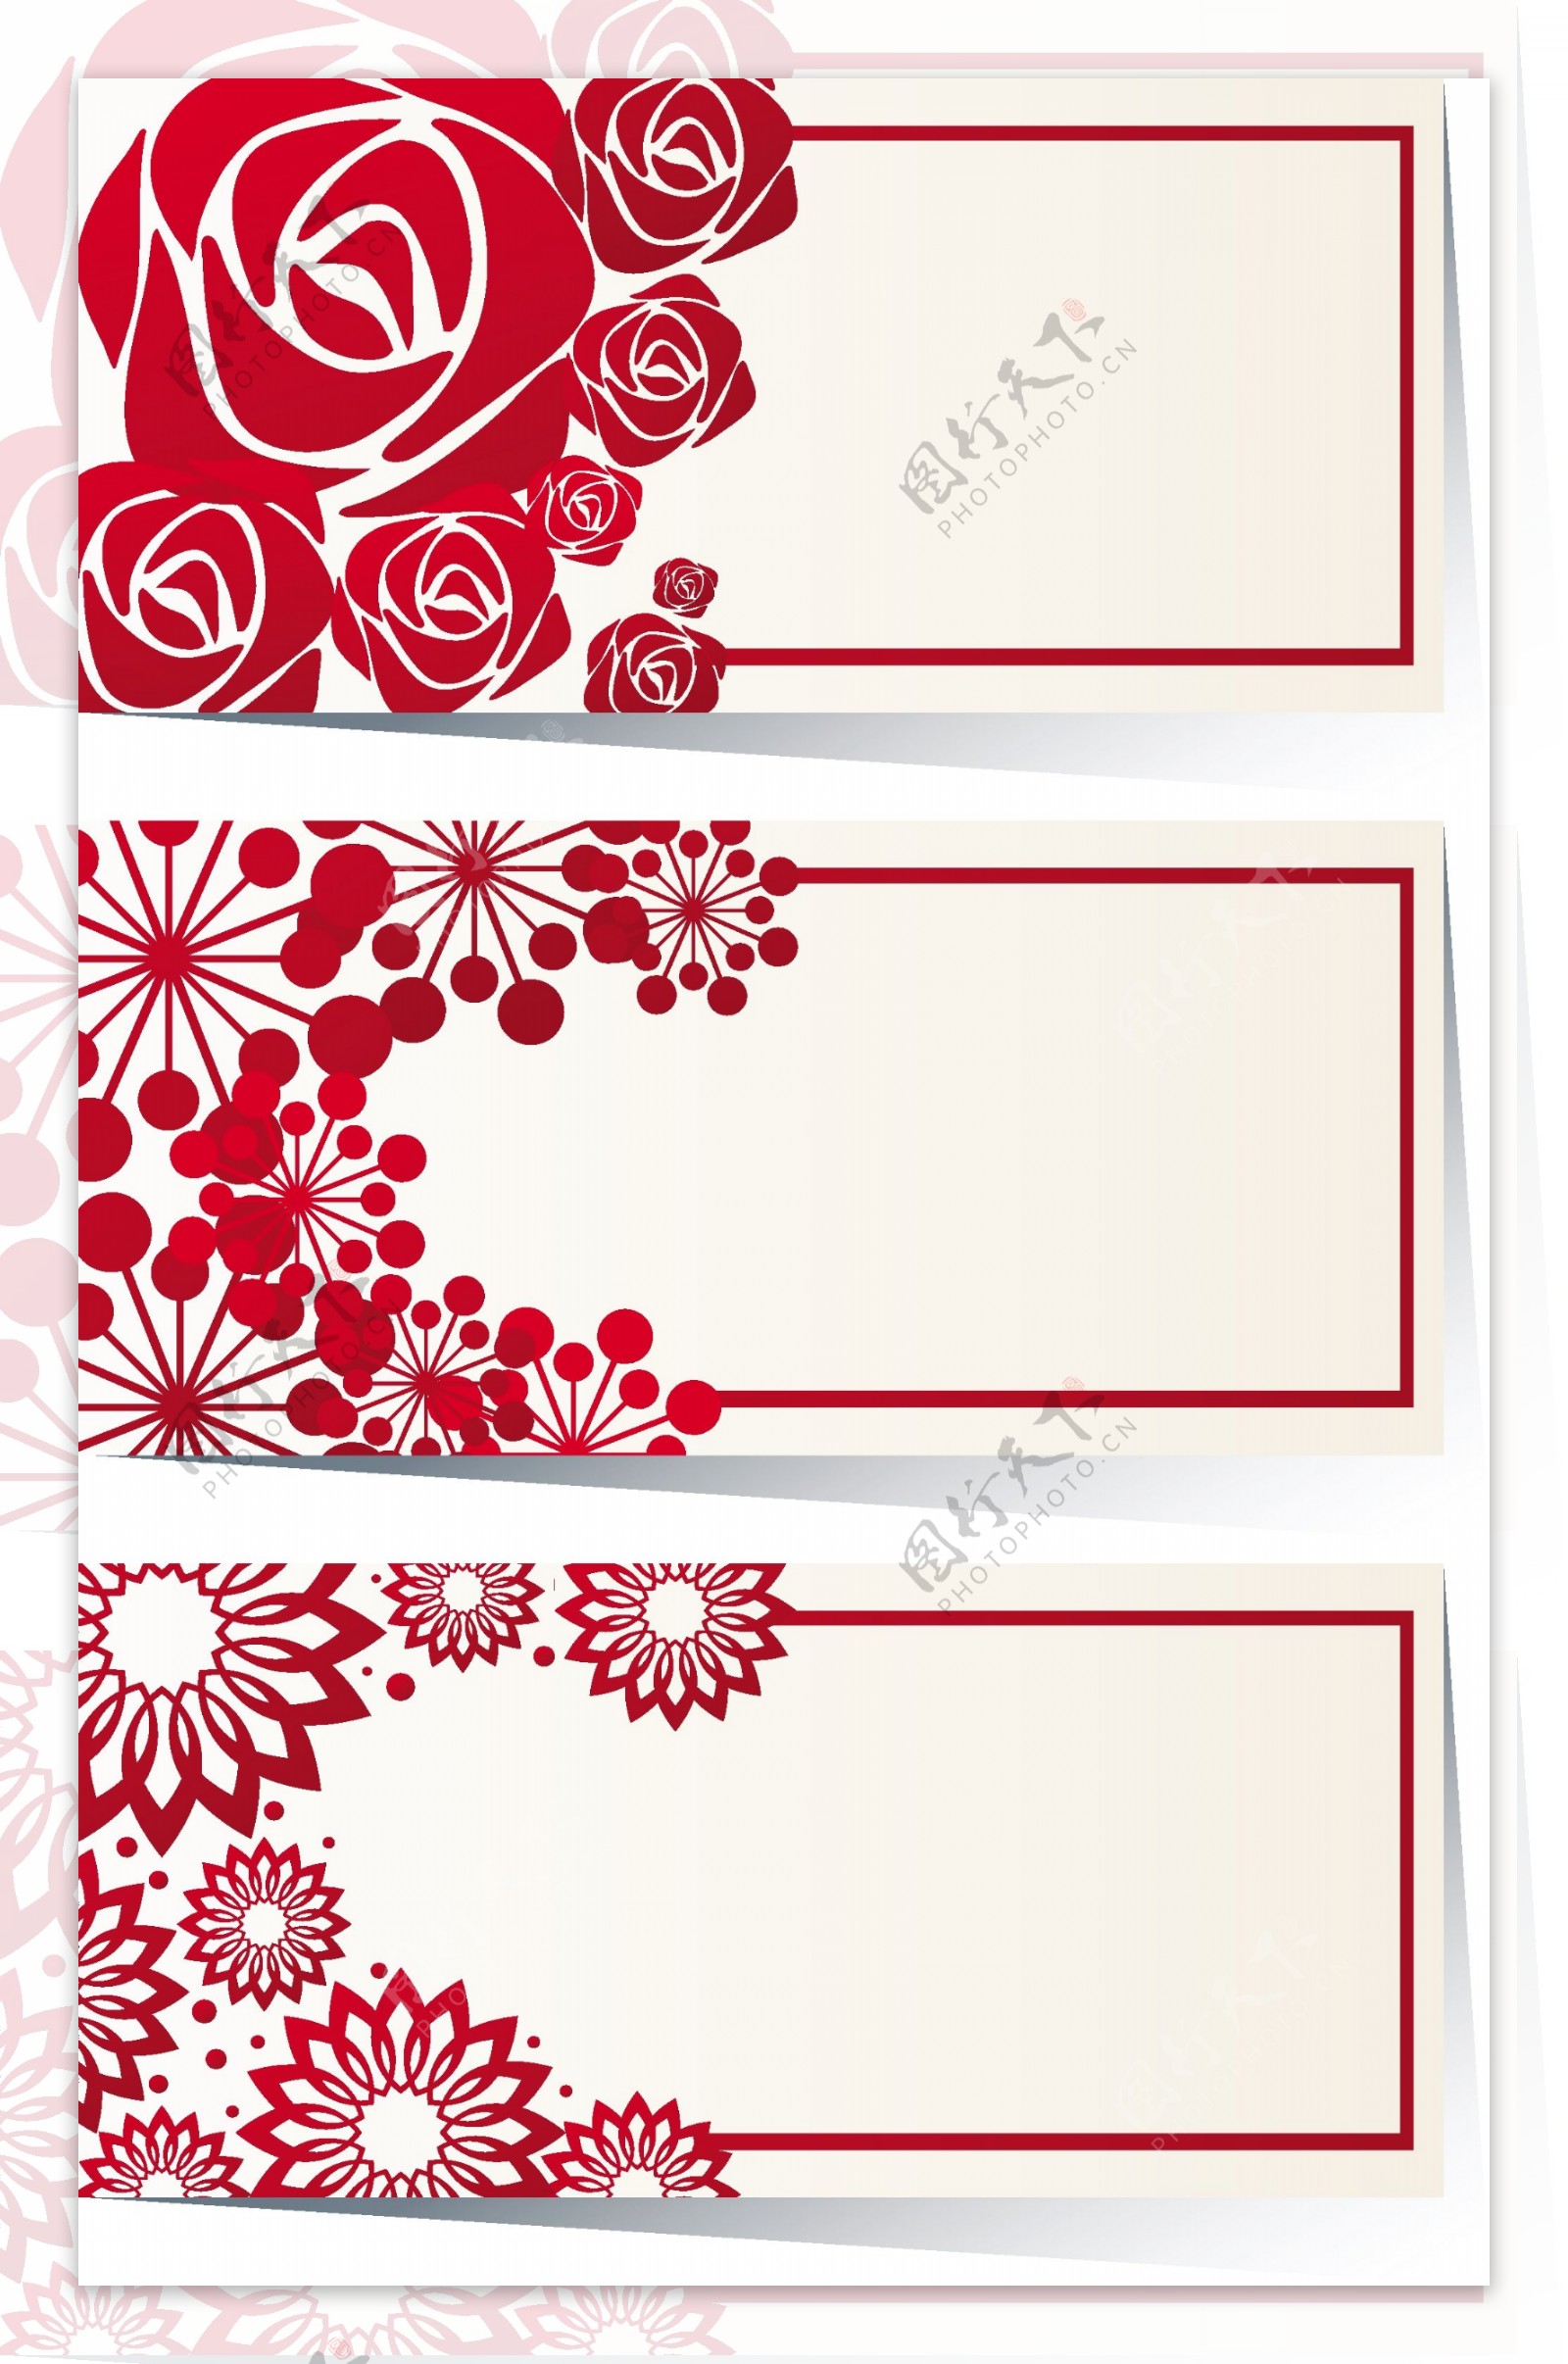 红色鲜花插图边框设计模板